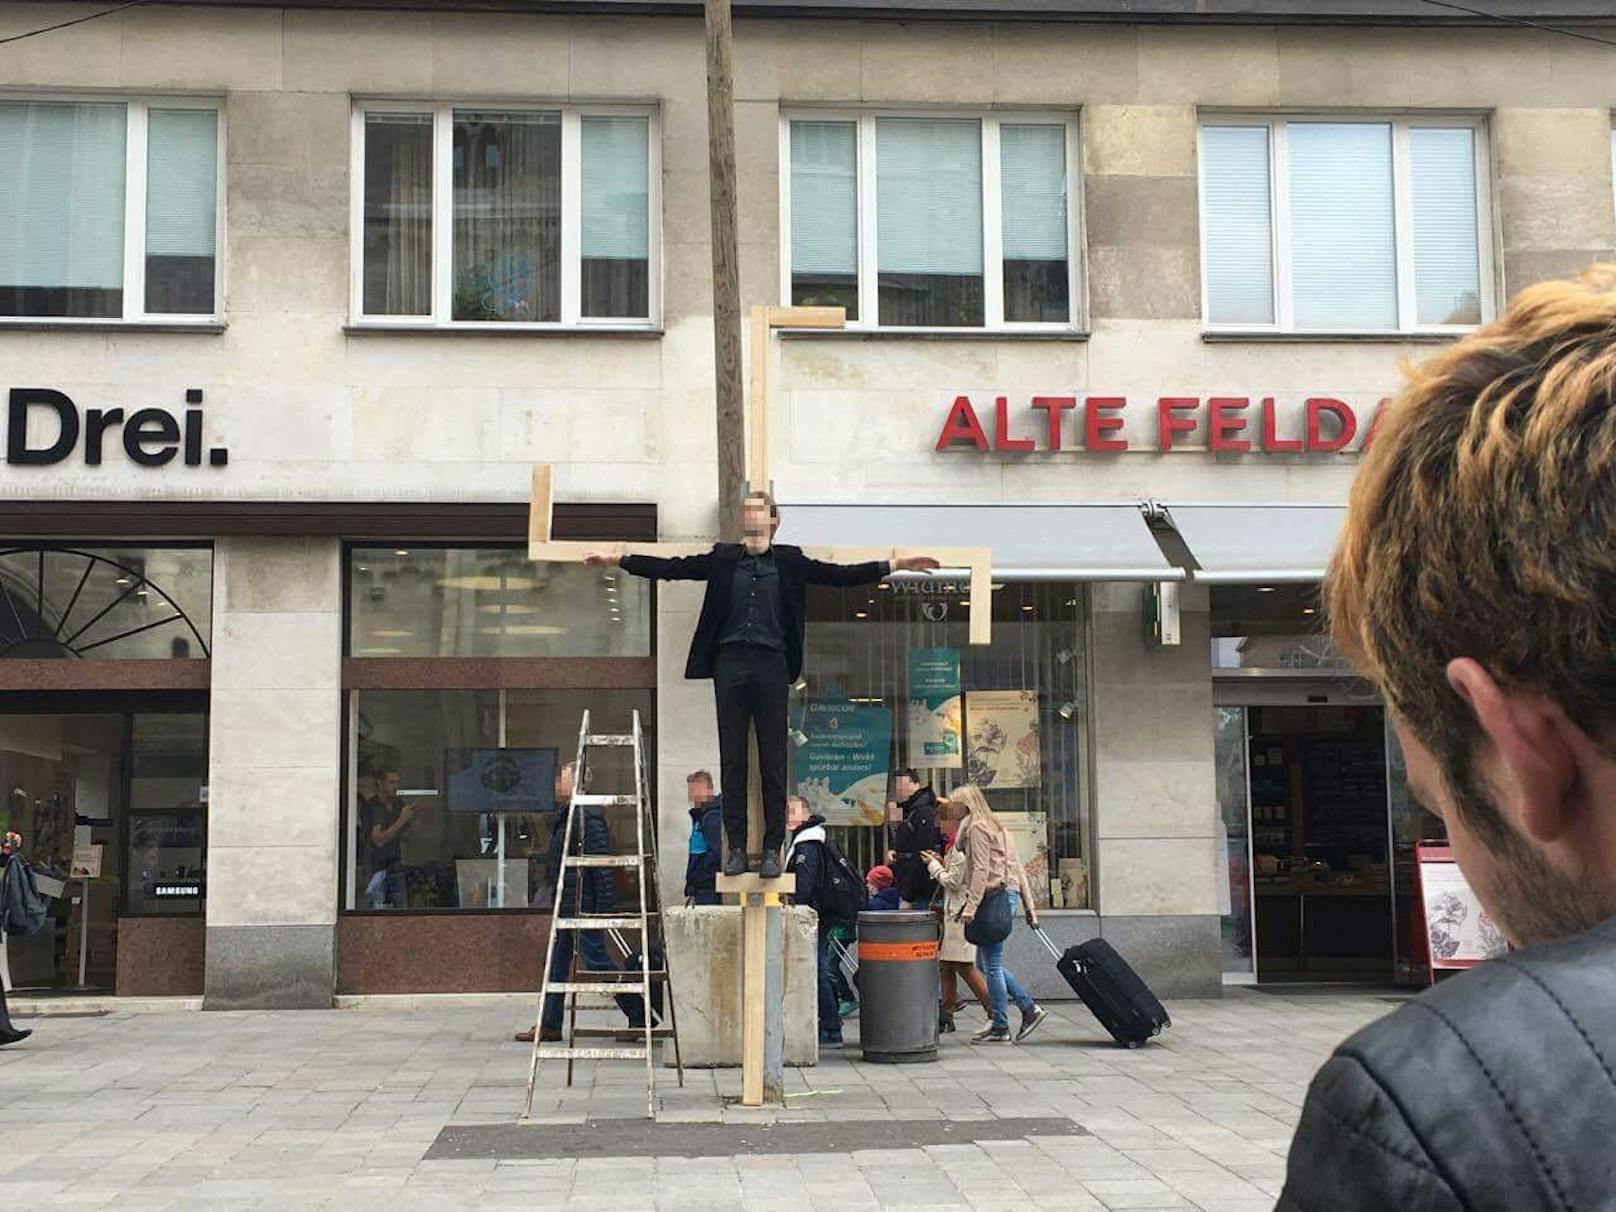 Ein Aktivist hing in Jesus-Pose an einem überdimensionalen Hakenkreuz am Stephansplatz